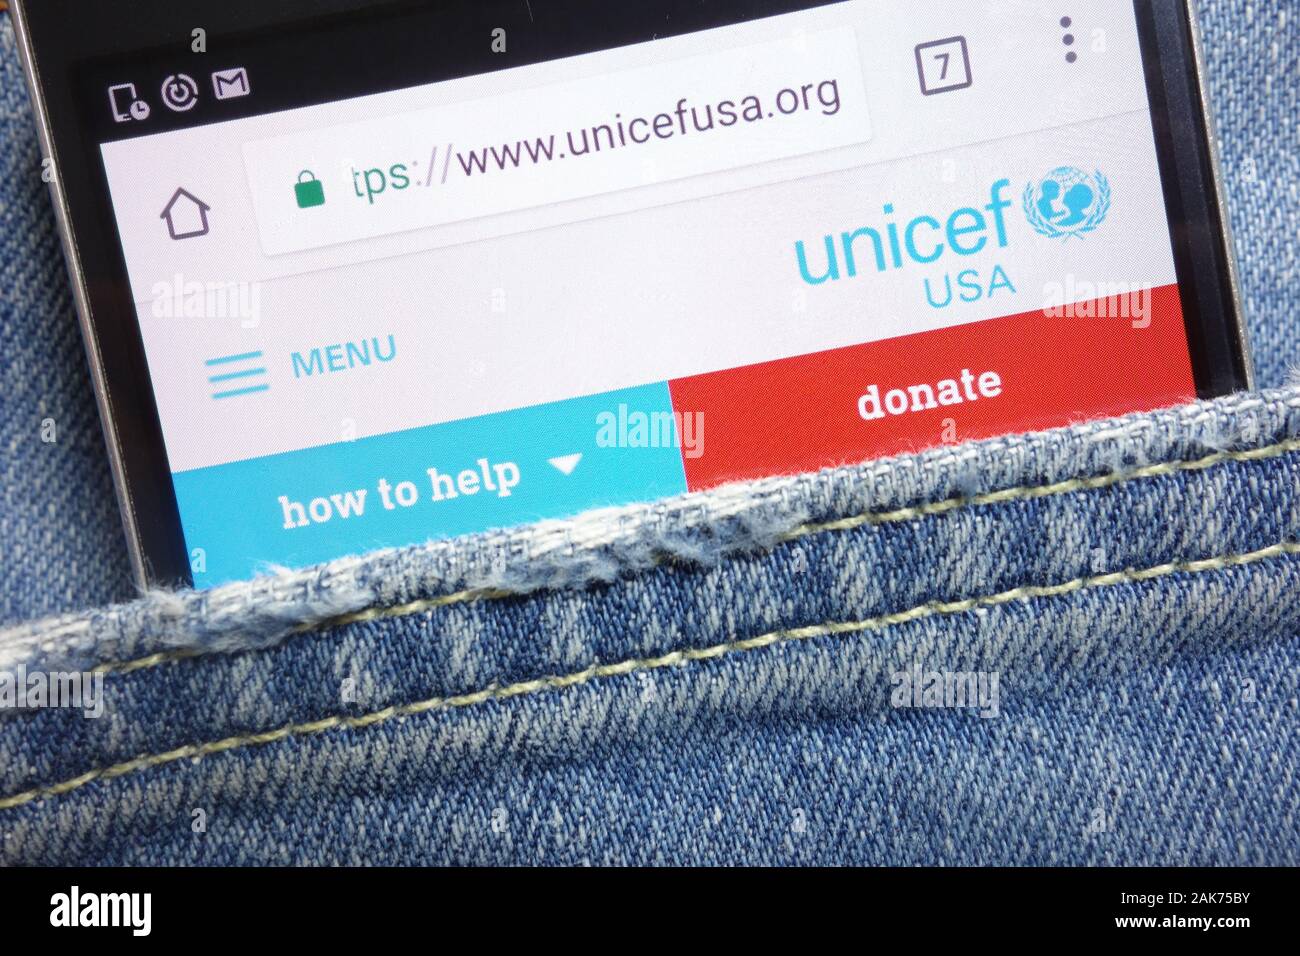 L'UNICEF USA Site web affiché sur smartphone caché dans la poche de jeans Banque D'Images